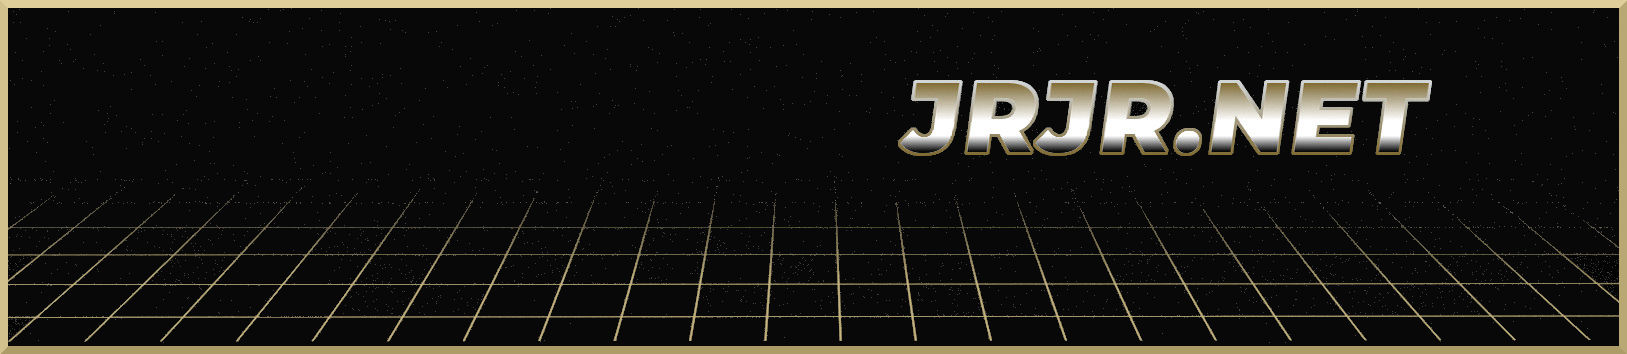 jrjr.net